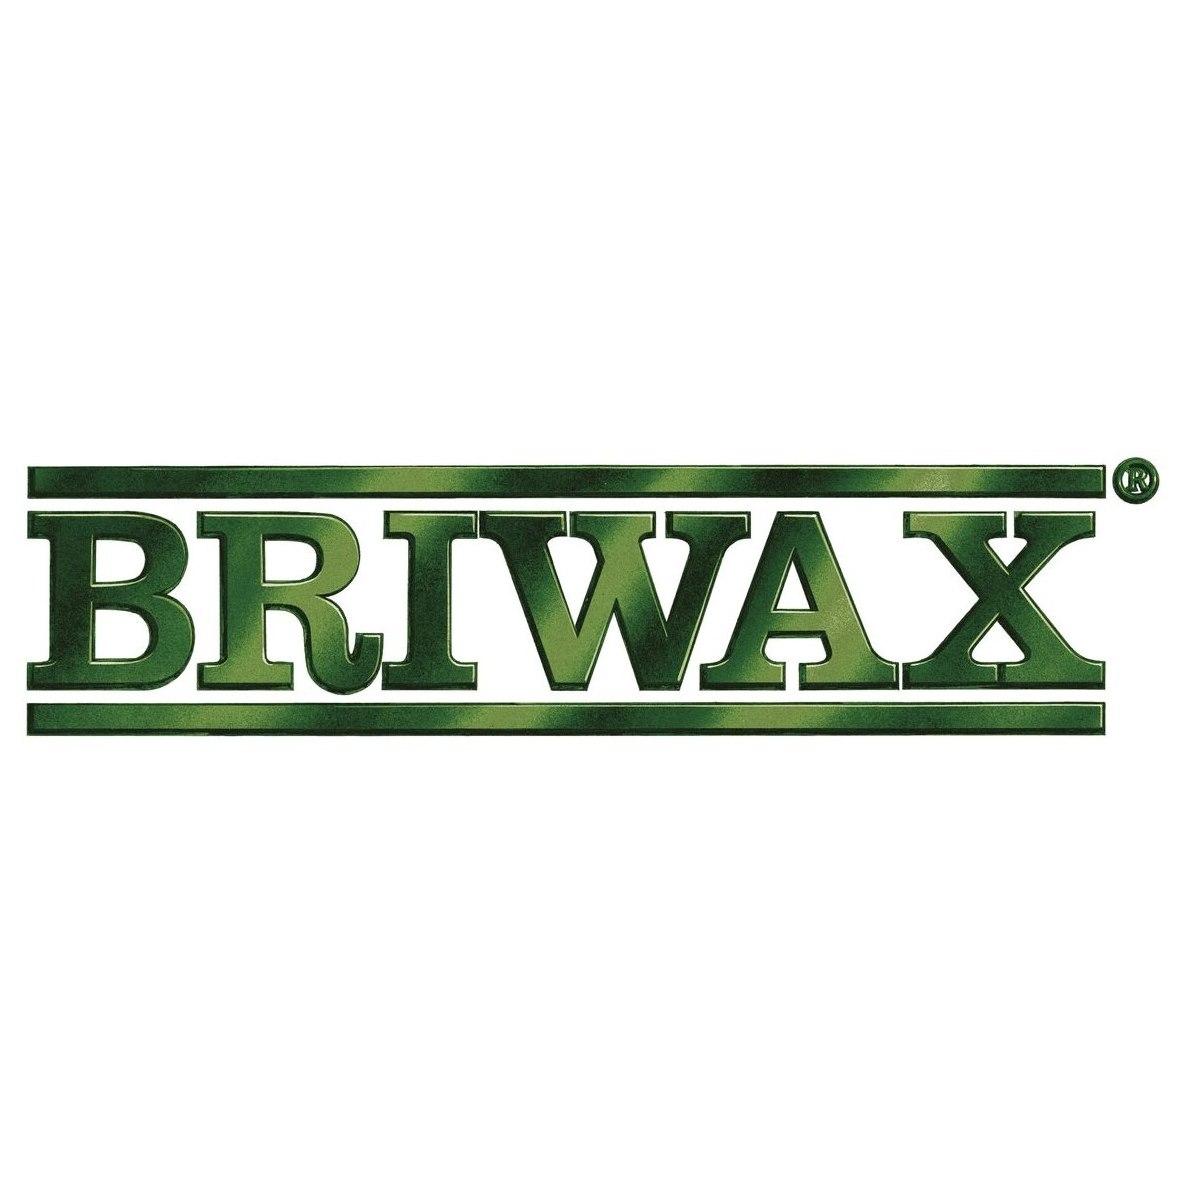 Briwax Original Walnut Wax Polish